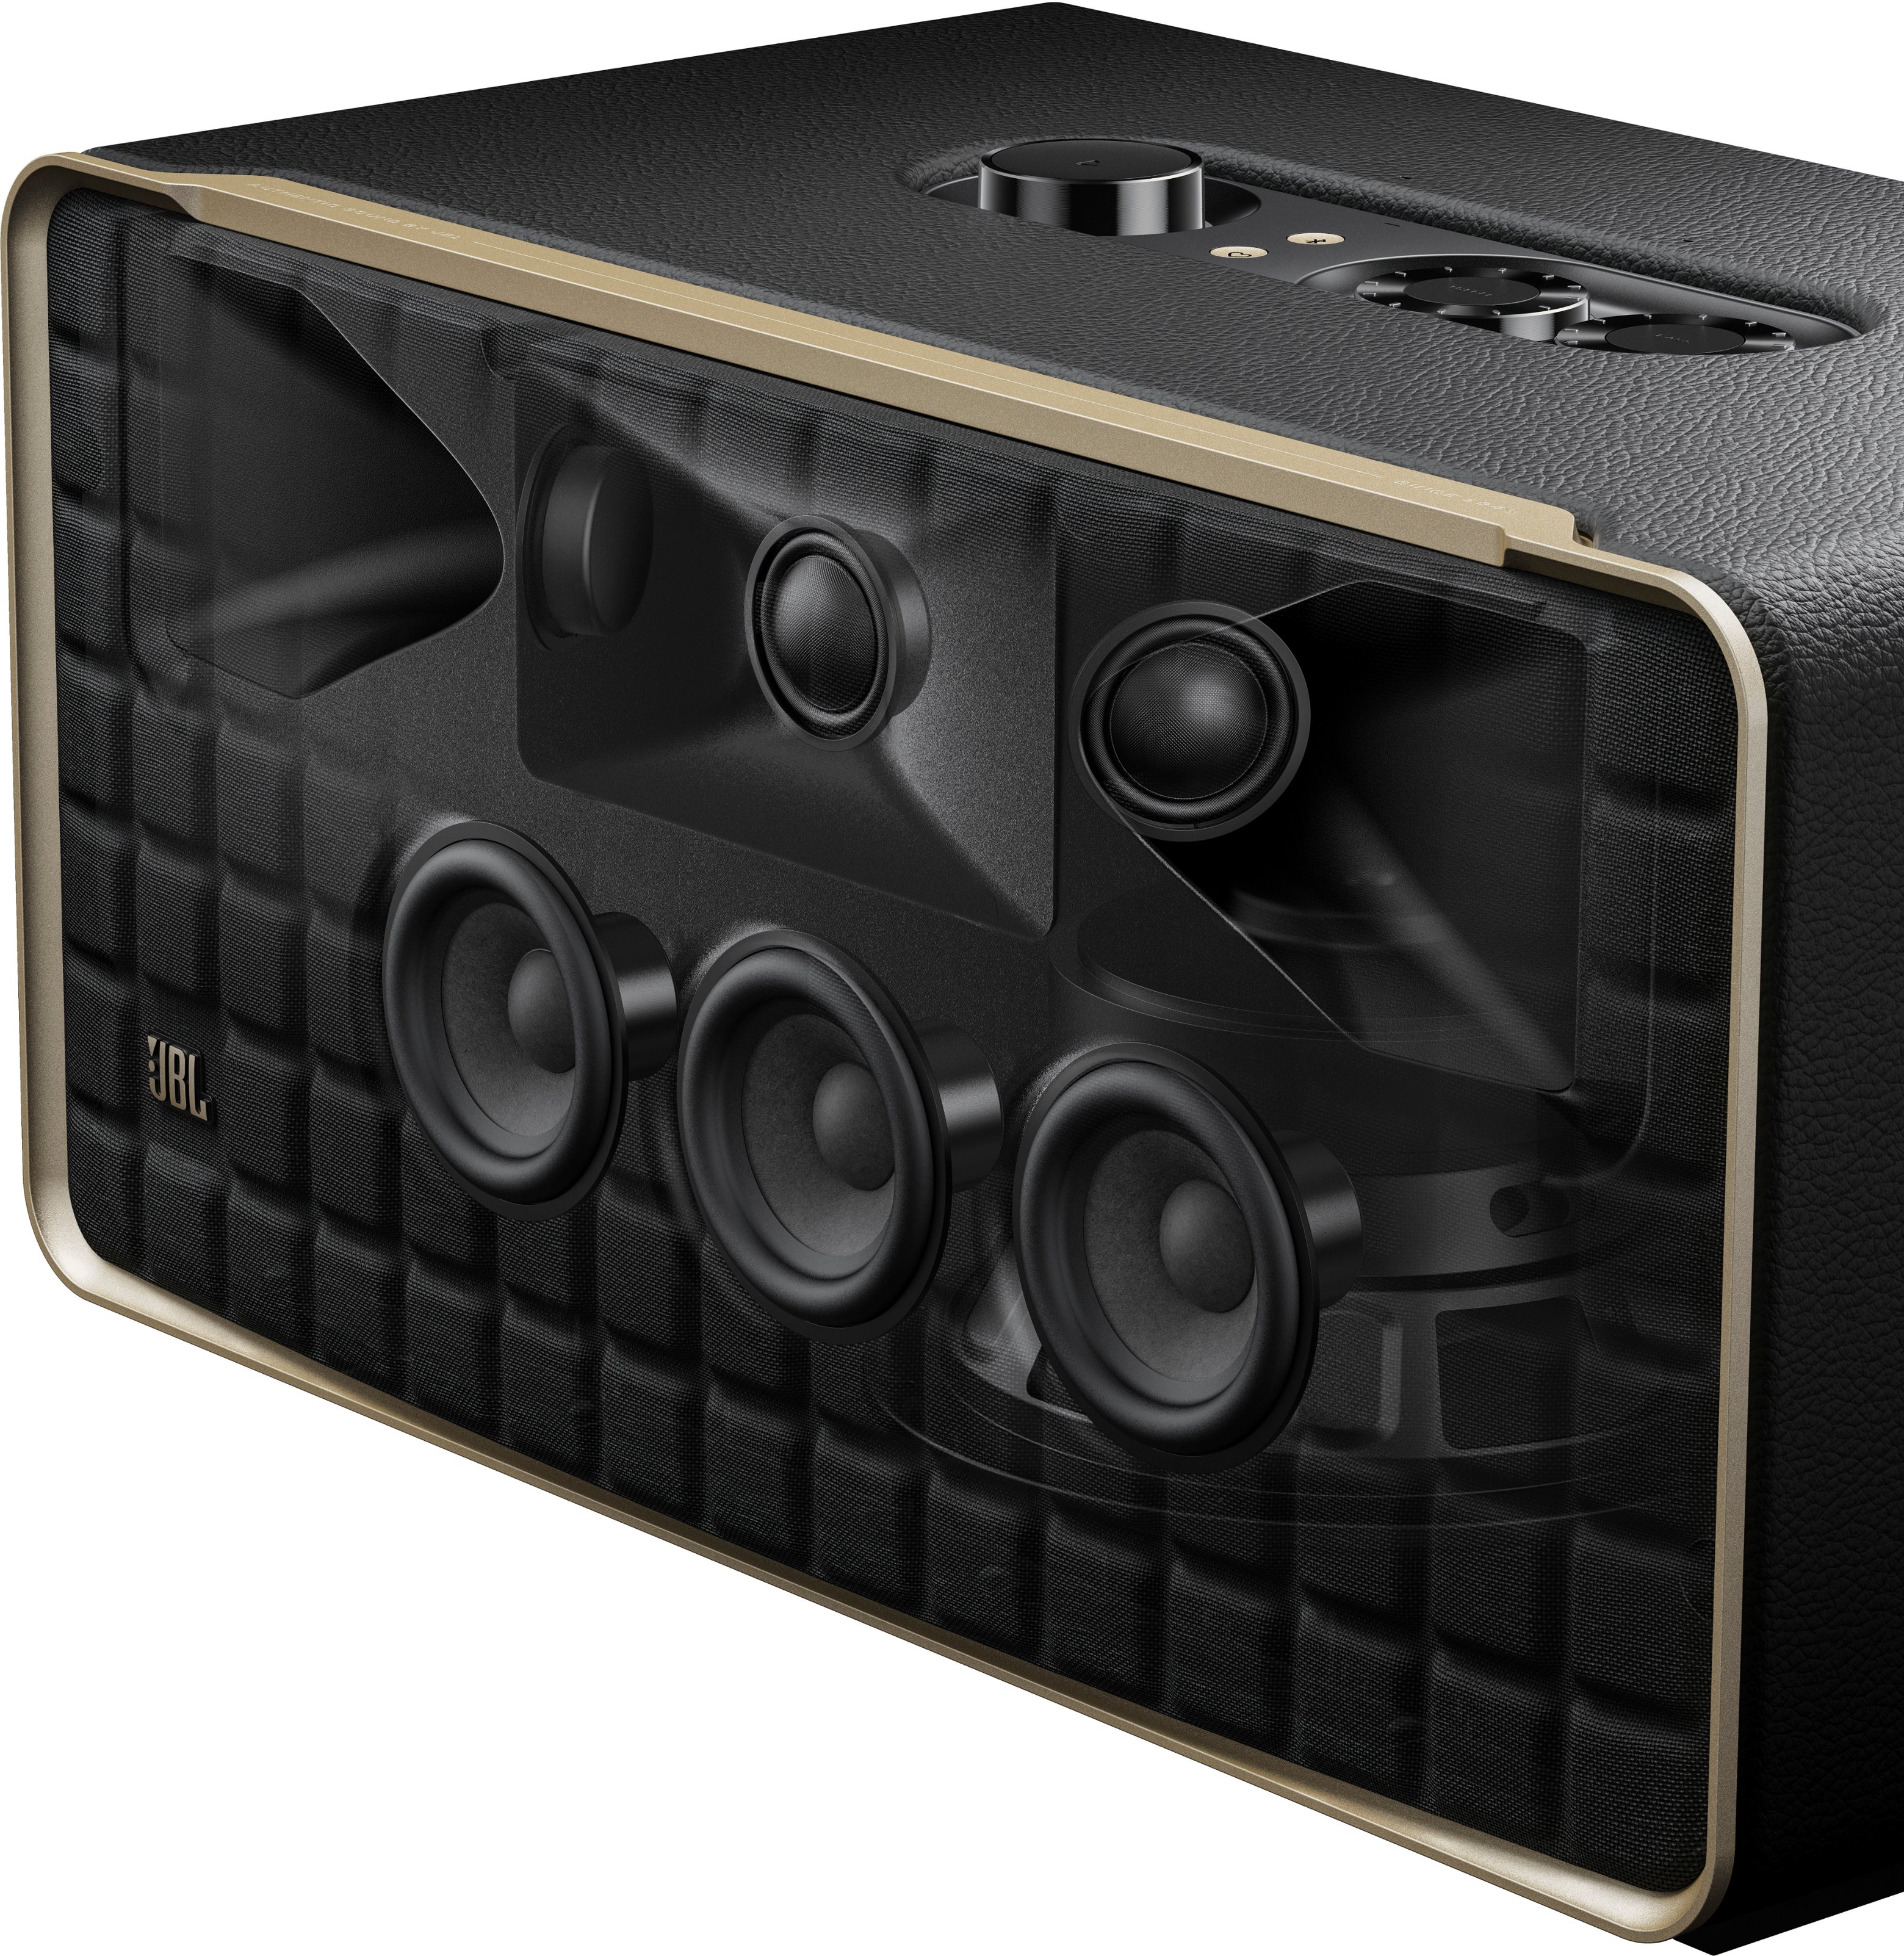 Authentics JBL Smart Best 500 Speaker - Buy JBLAUTH500BLKAM Black Home